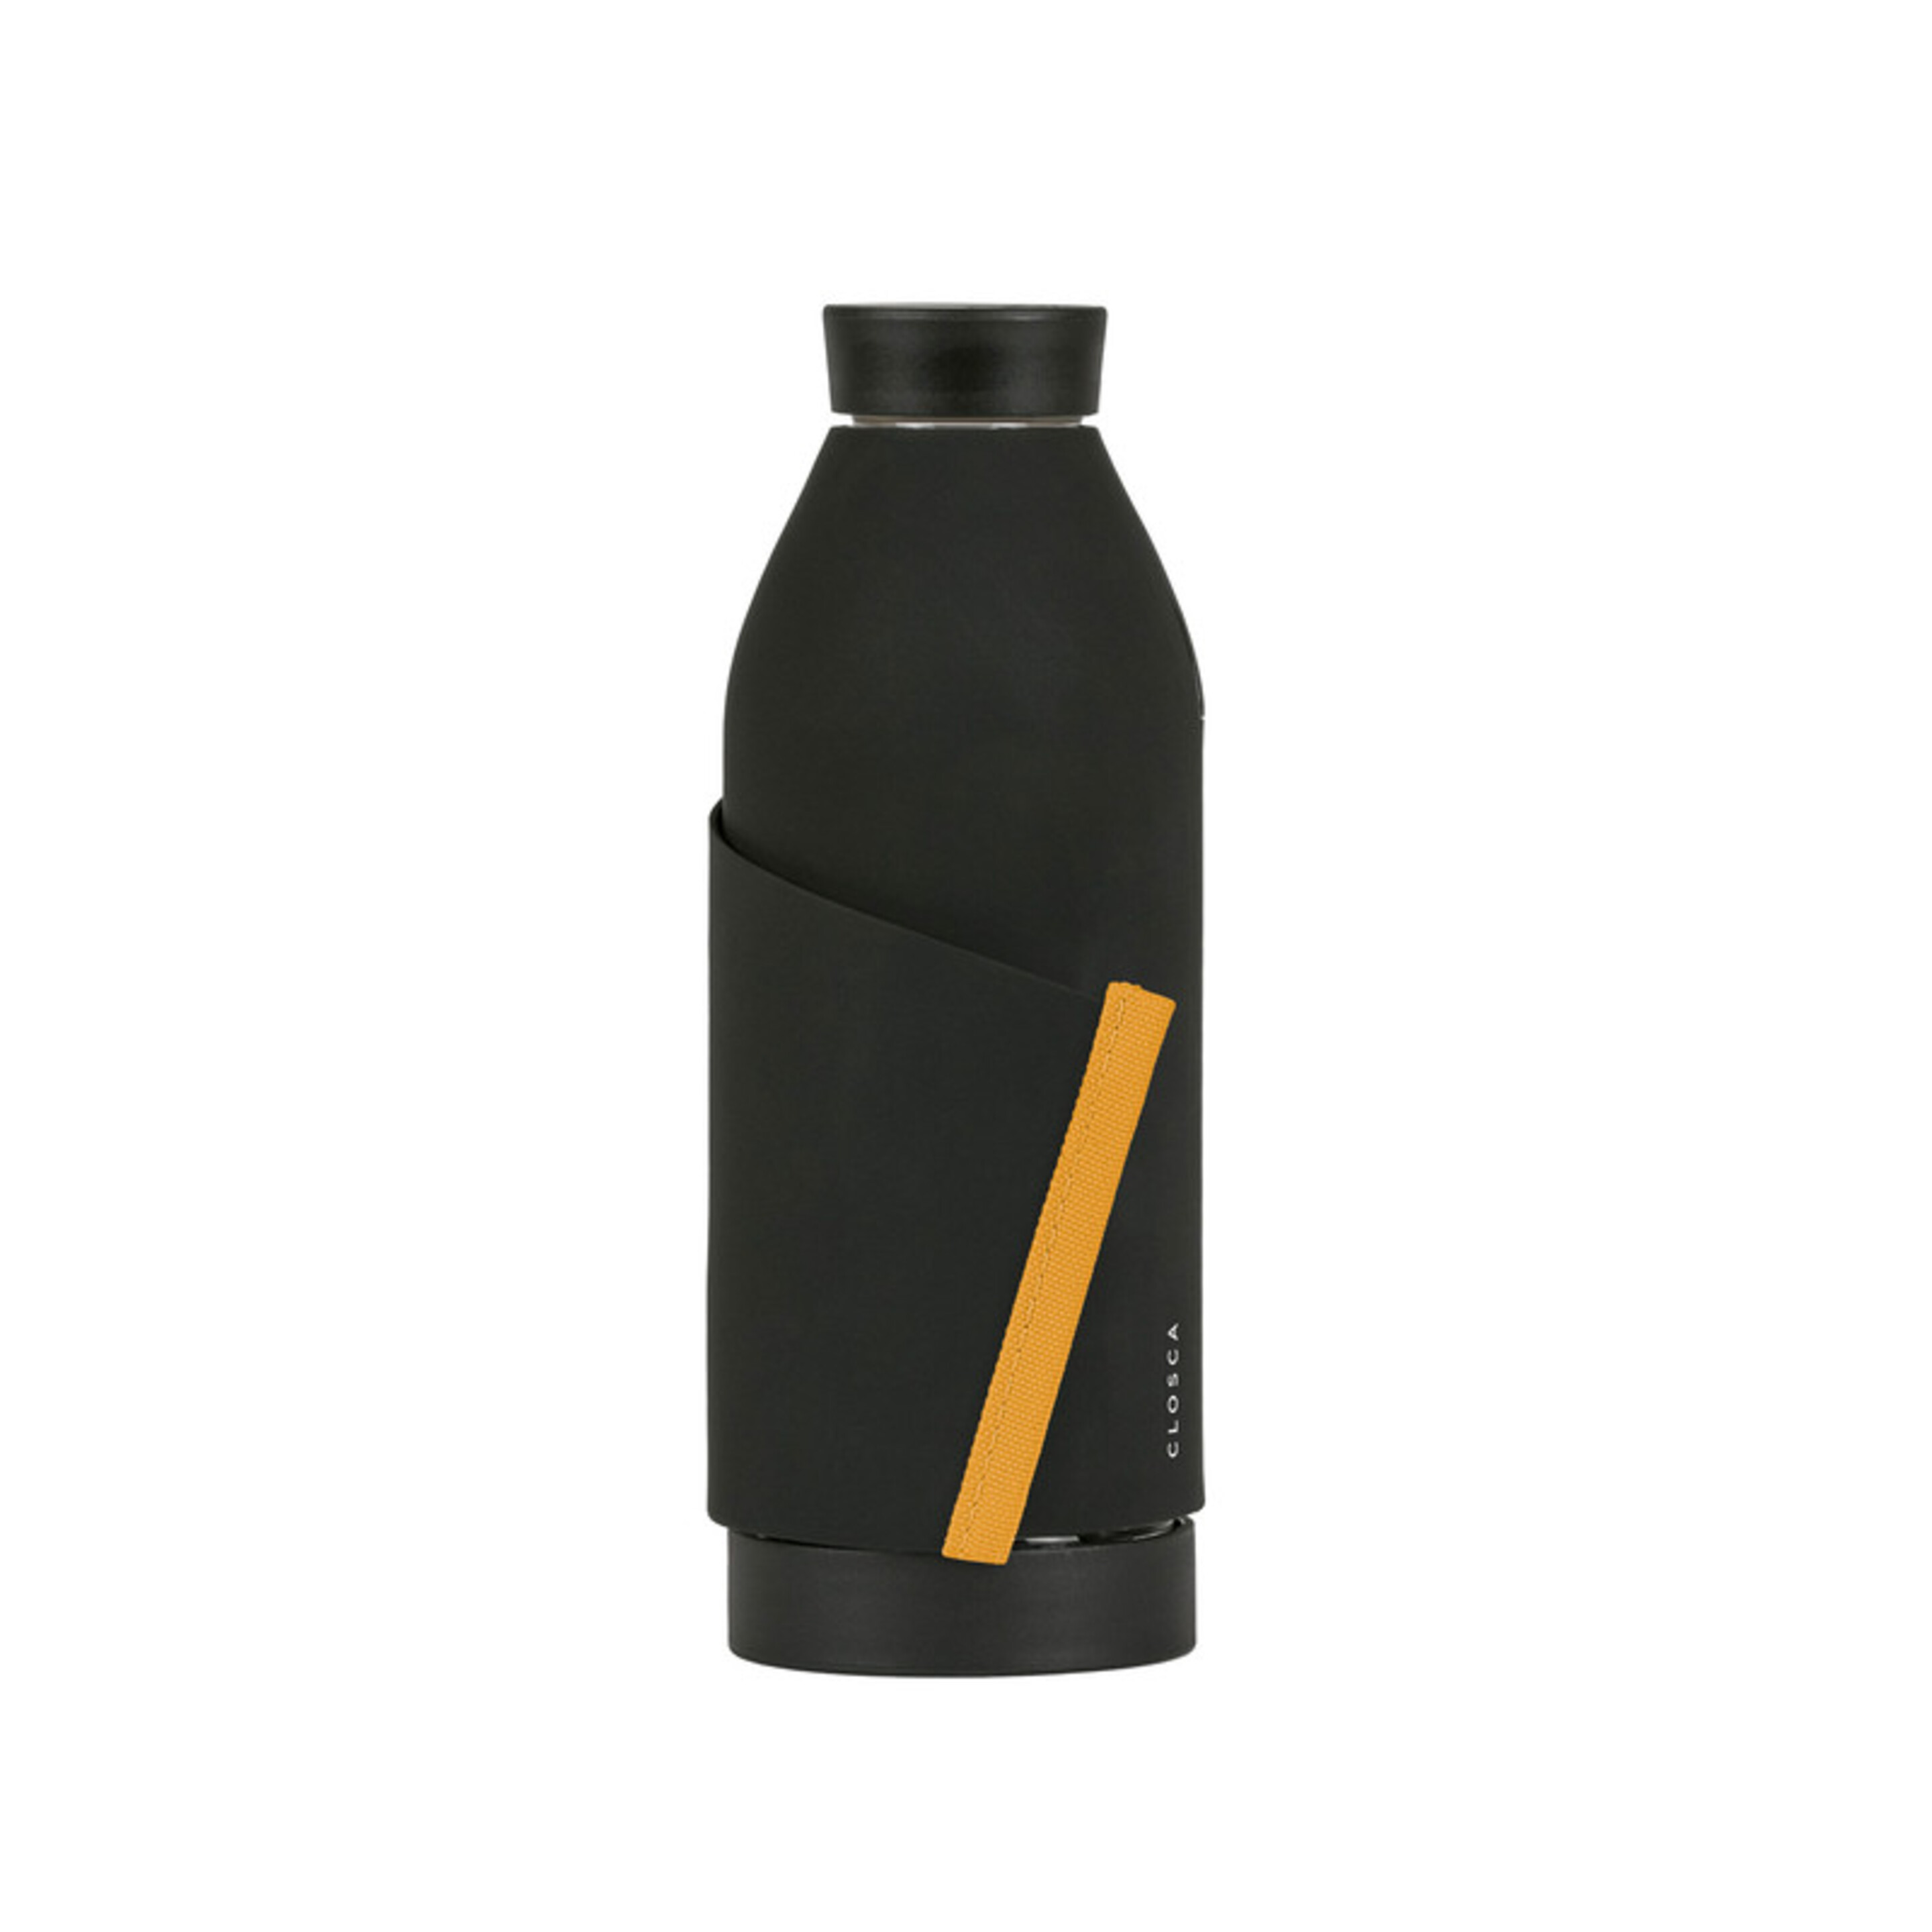 Botella De Agua Clásica De Vidrio De 420 Ml - Negro/Amarillo - Doble Apertura Y Sistema De Agarre.  MKP